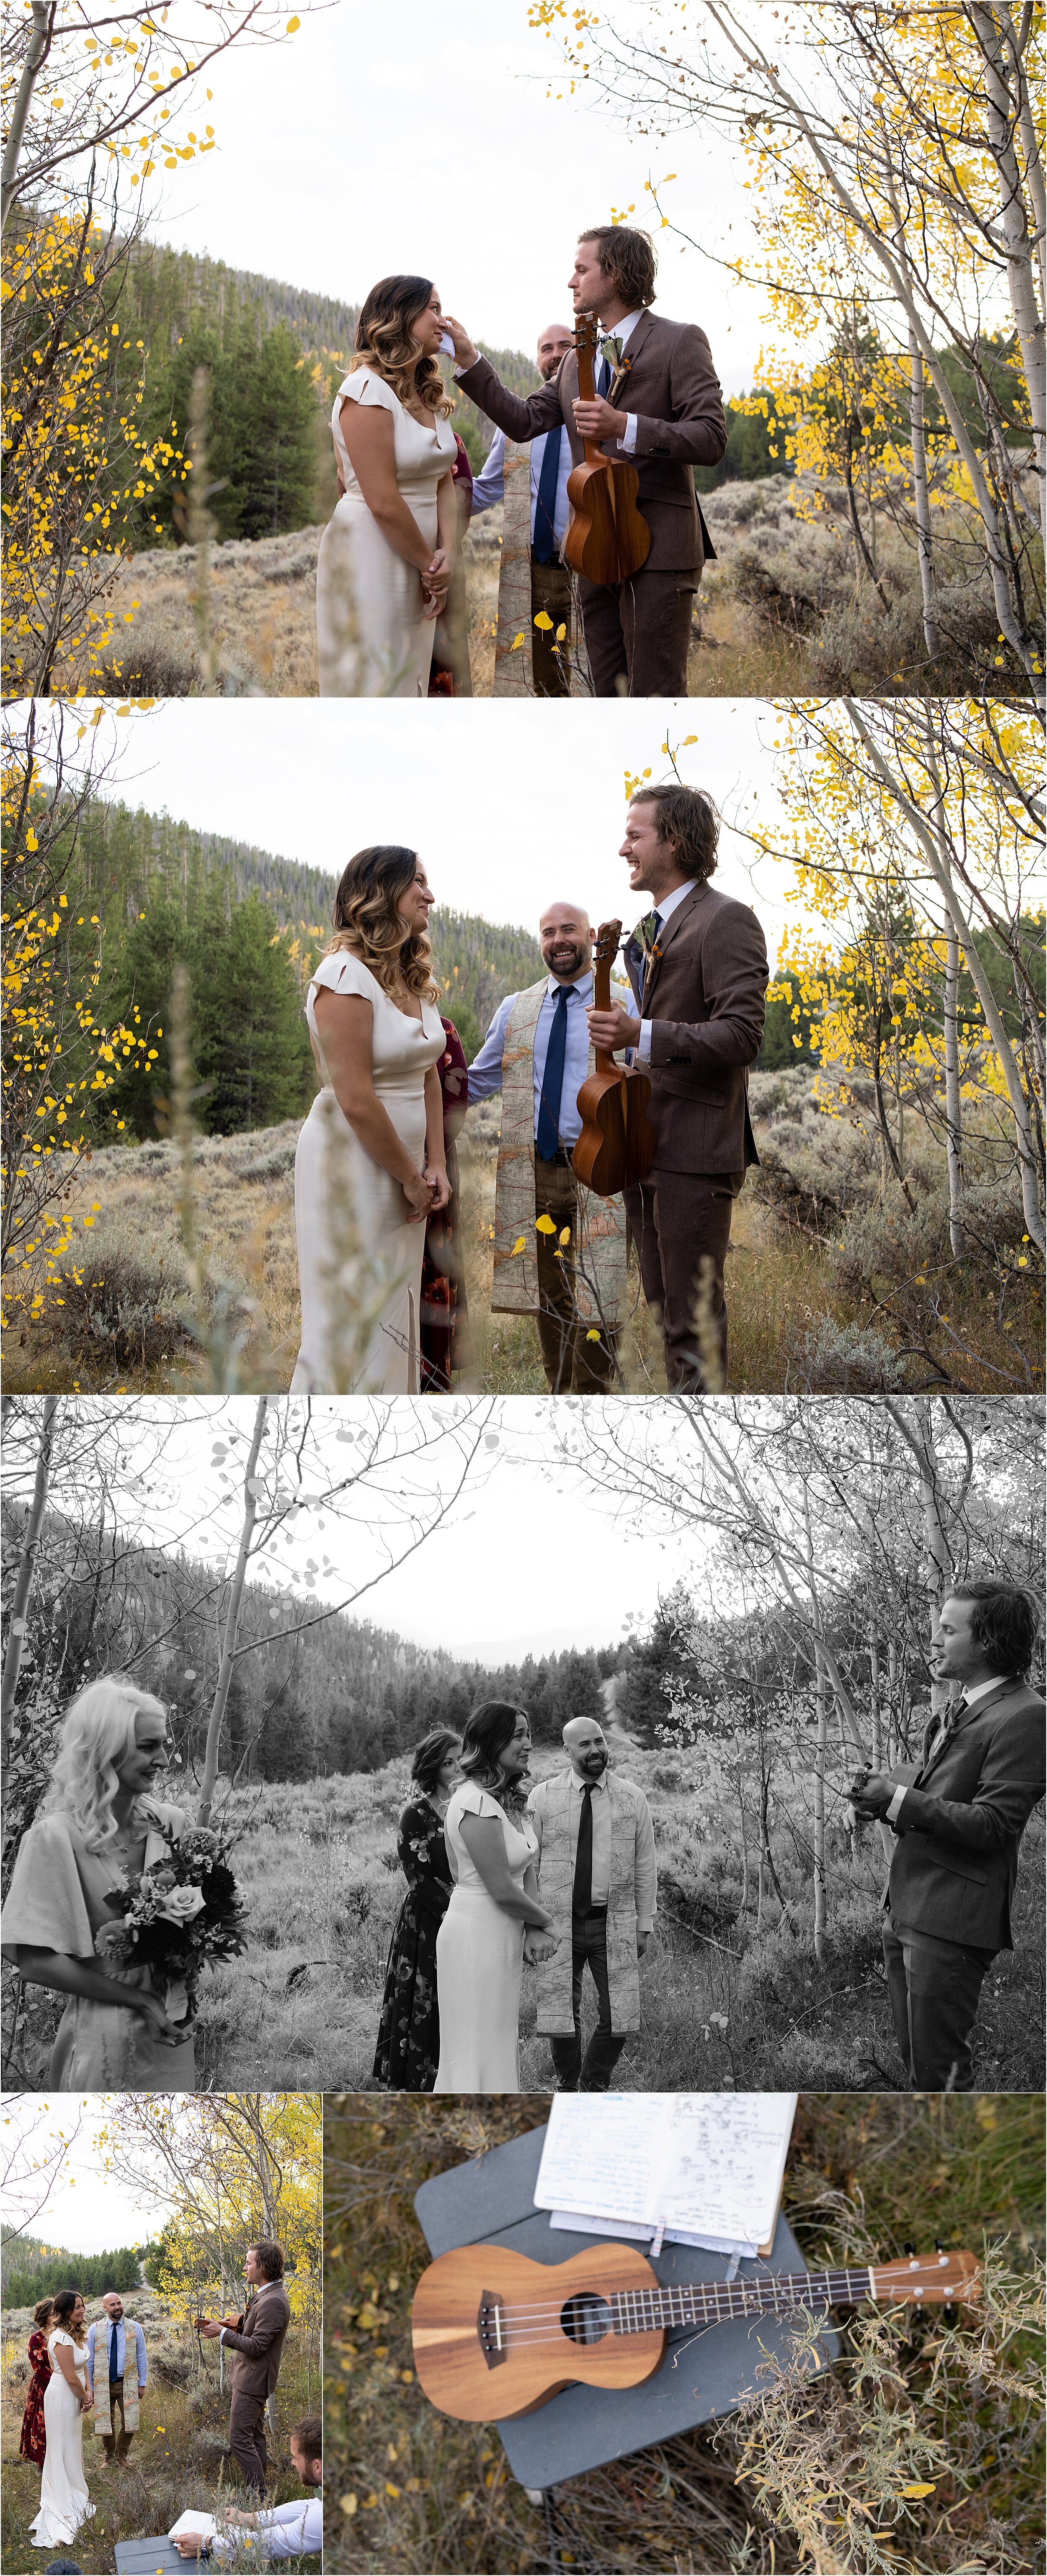 Aspen Grove Wedding Ceremony